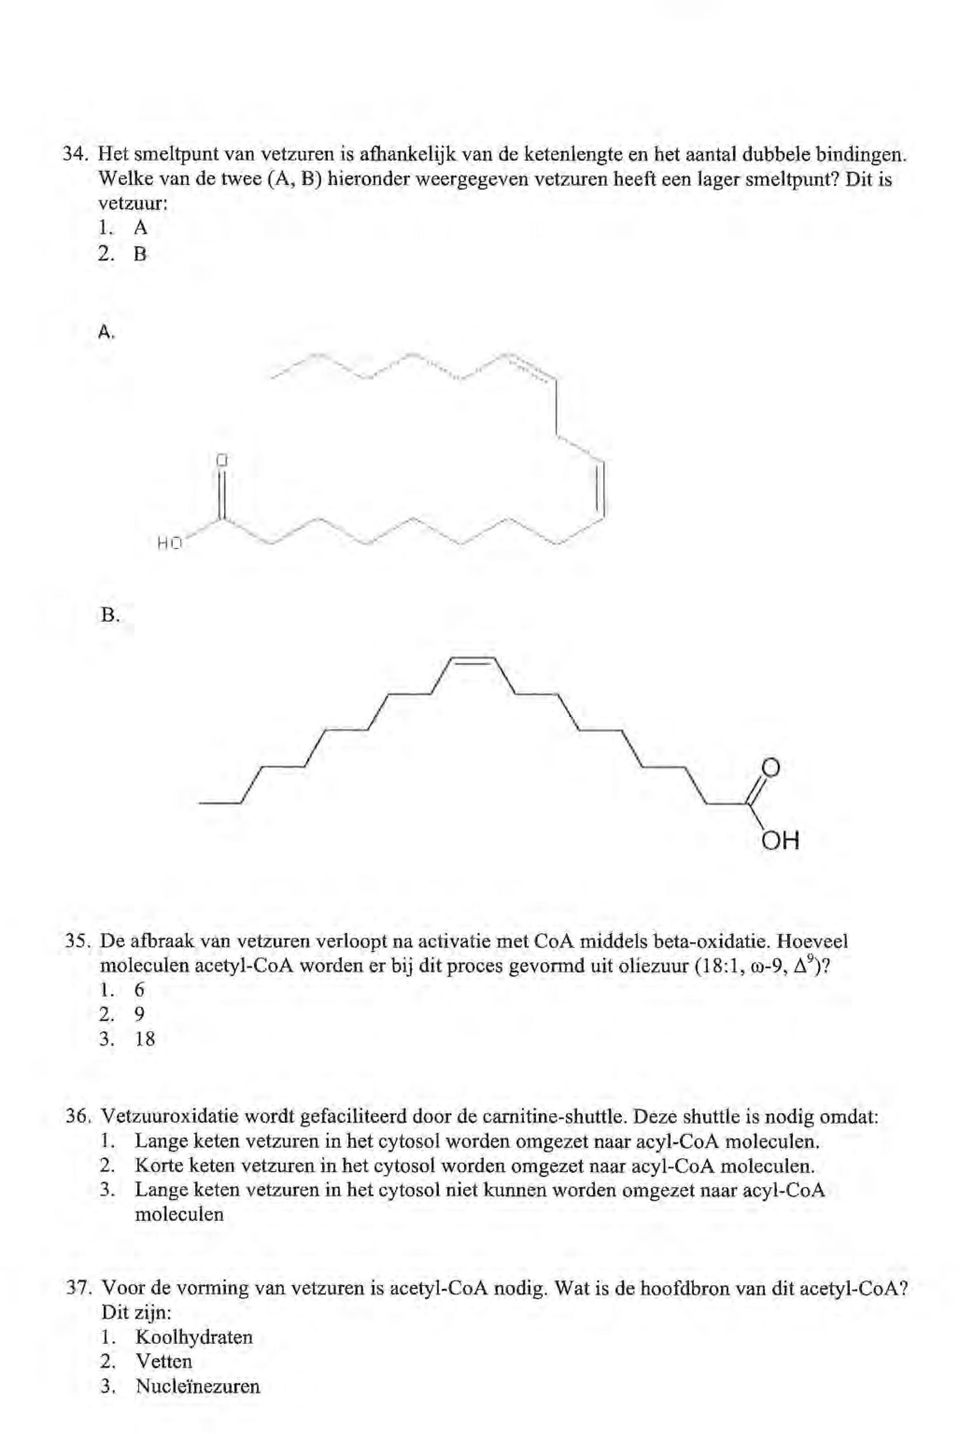 Hoeveel moleculen acetyl-coa worden er bij dit proces gevormd uit oliezuur (18:1, m-9,!).?)? 1. 6 2. 9 3. 18 36. Vetzuuroxidatie wordt gefaciliteerd door de camitine-shuttle.